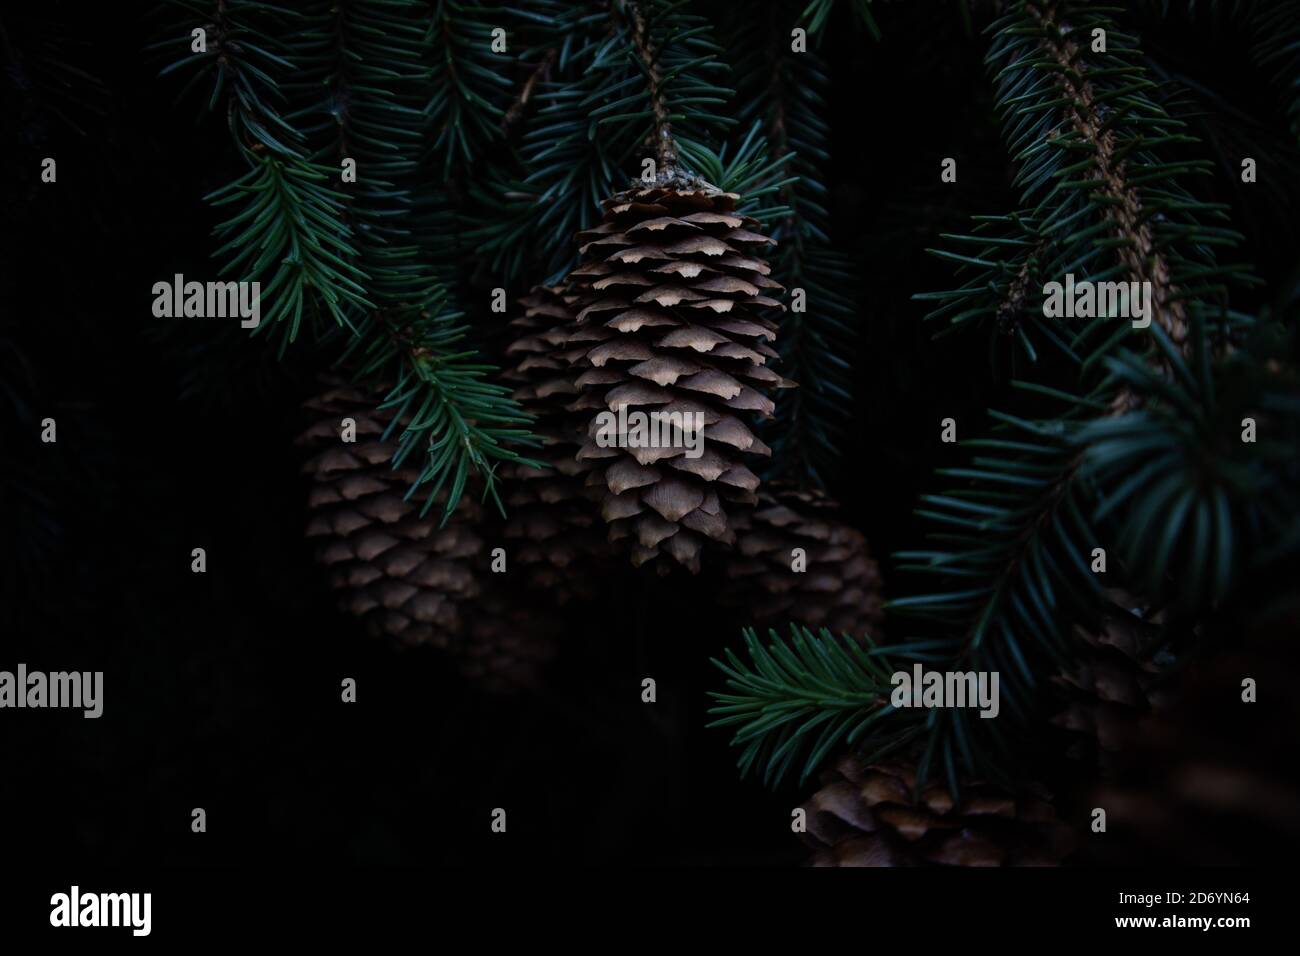 Gros plan de cônes de pin sur une branche en forêt. Cônes de pin dans l'obscurité. Arrière-plan sombre. Branches de sapin sur fond noir. Banque D'Images